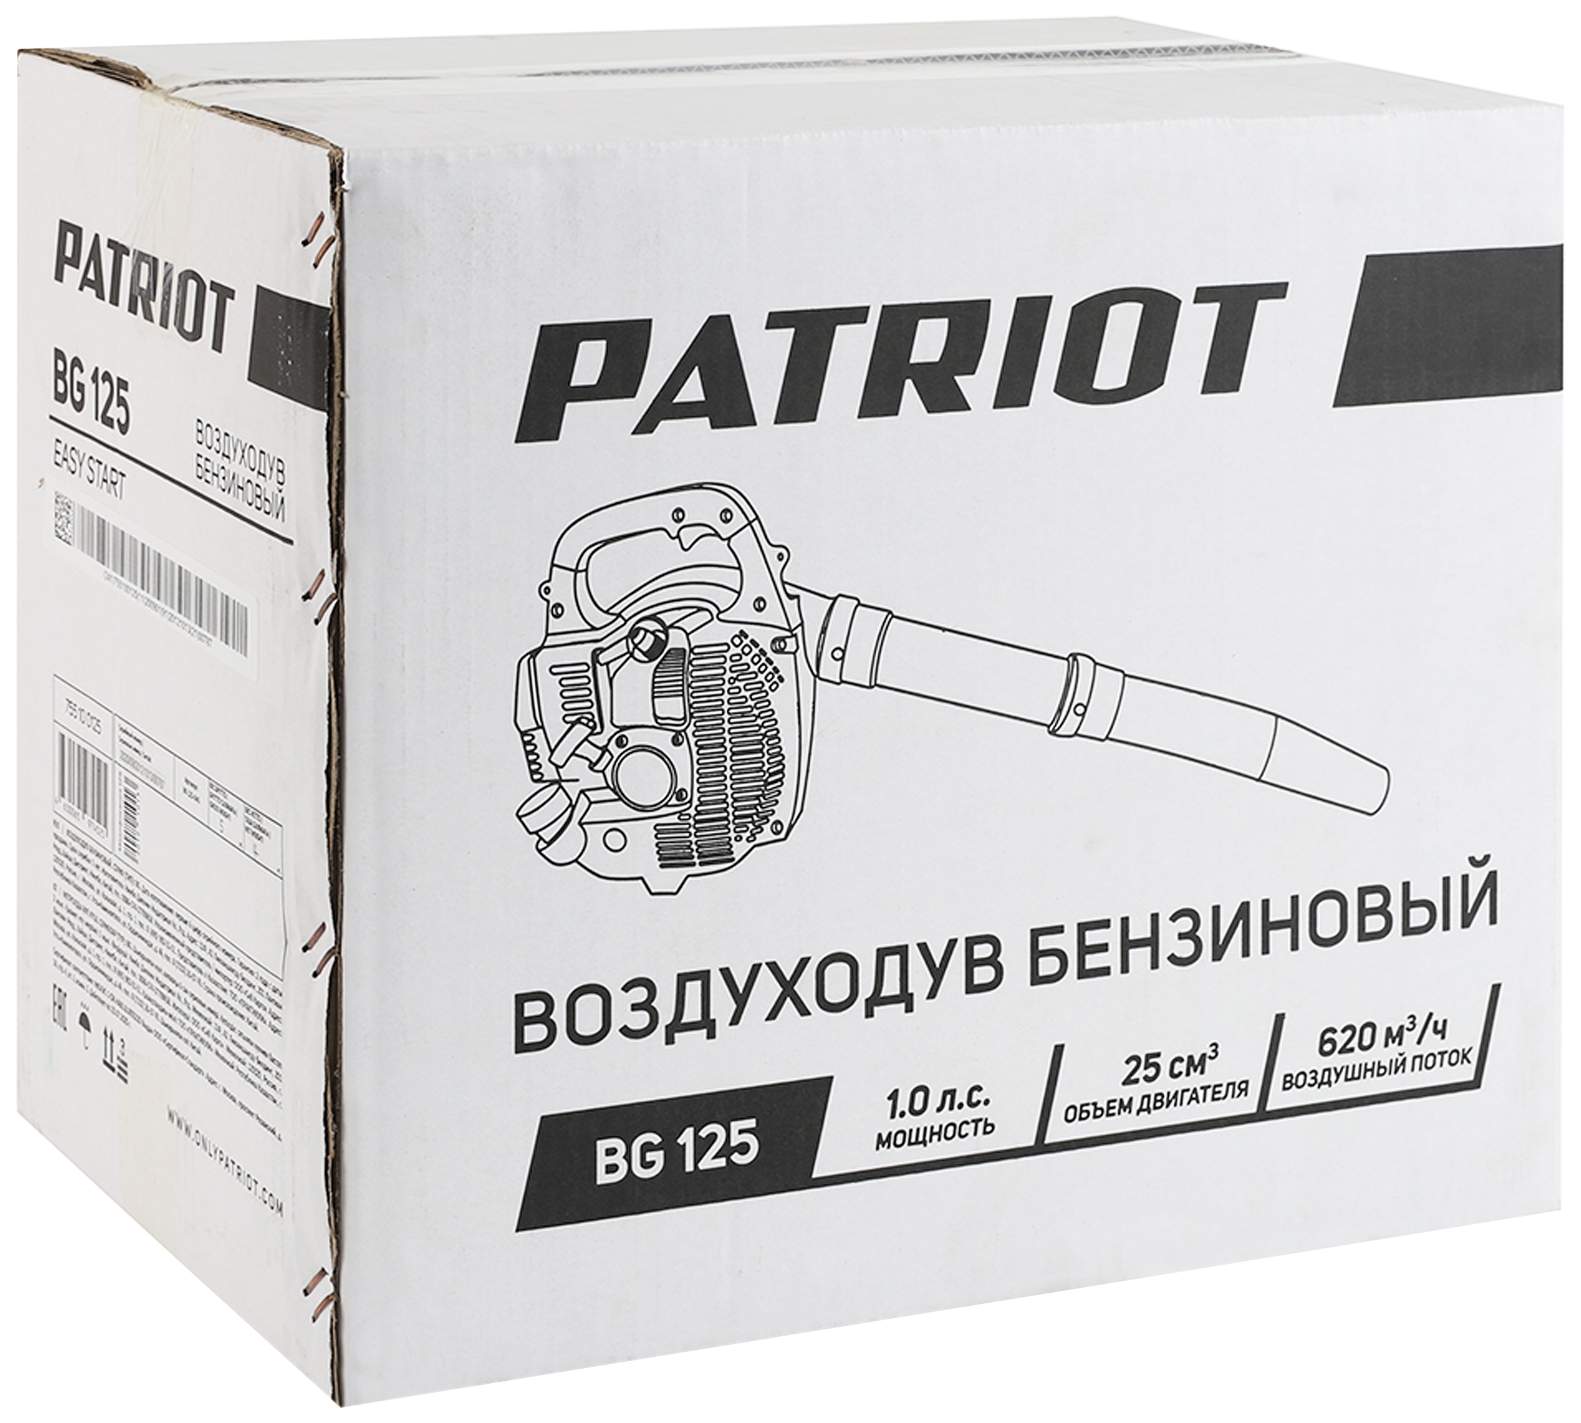 Бензиновая воздуходувка Patriot BG 125 755100125 1 л.с.